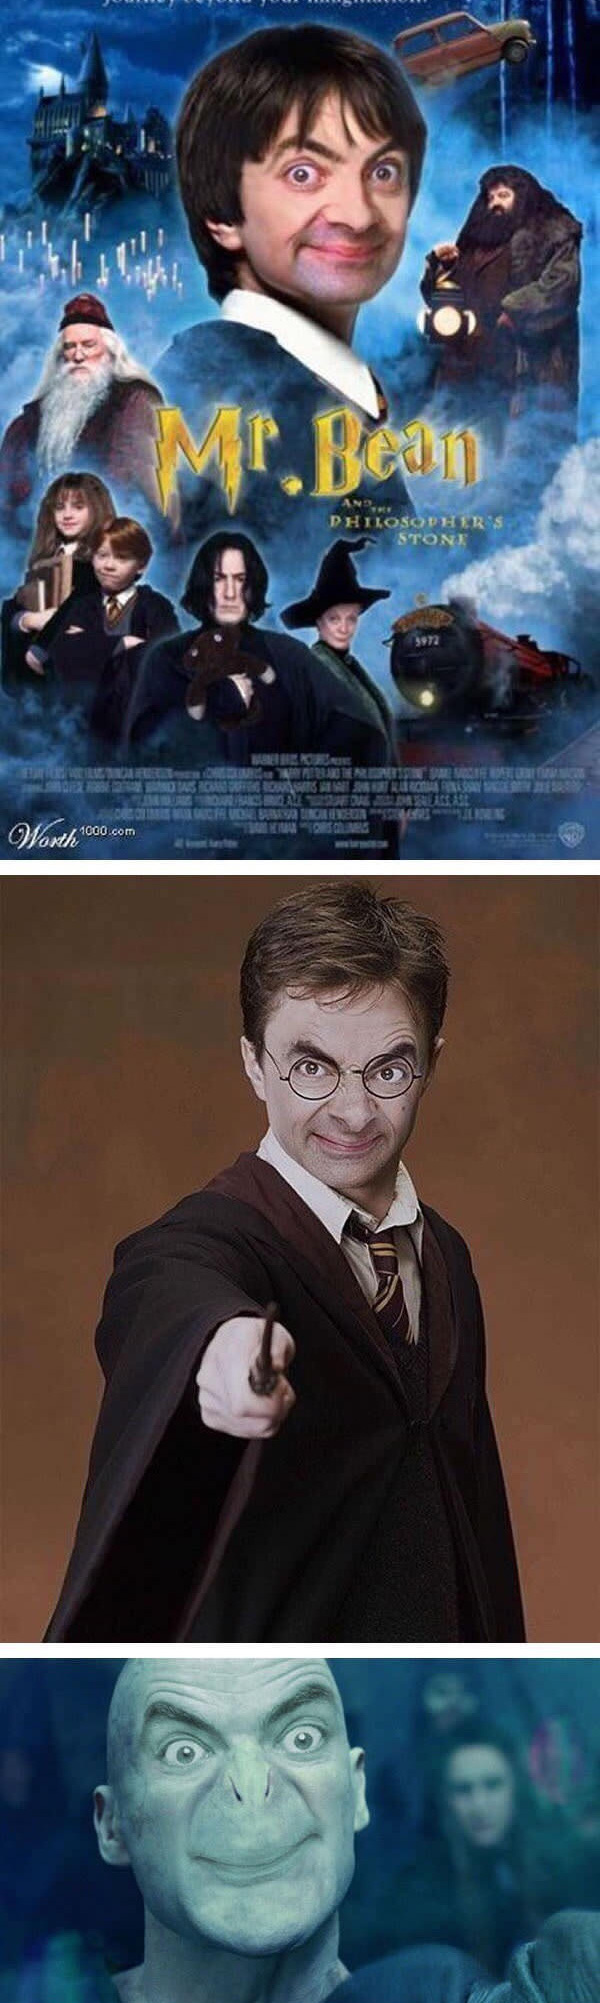 
Và cực kỳ xuất sắc khi trở thành Harry Potter cũng như phù thủy hắc ám Voldemort
